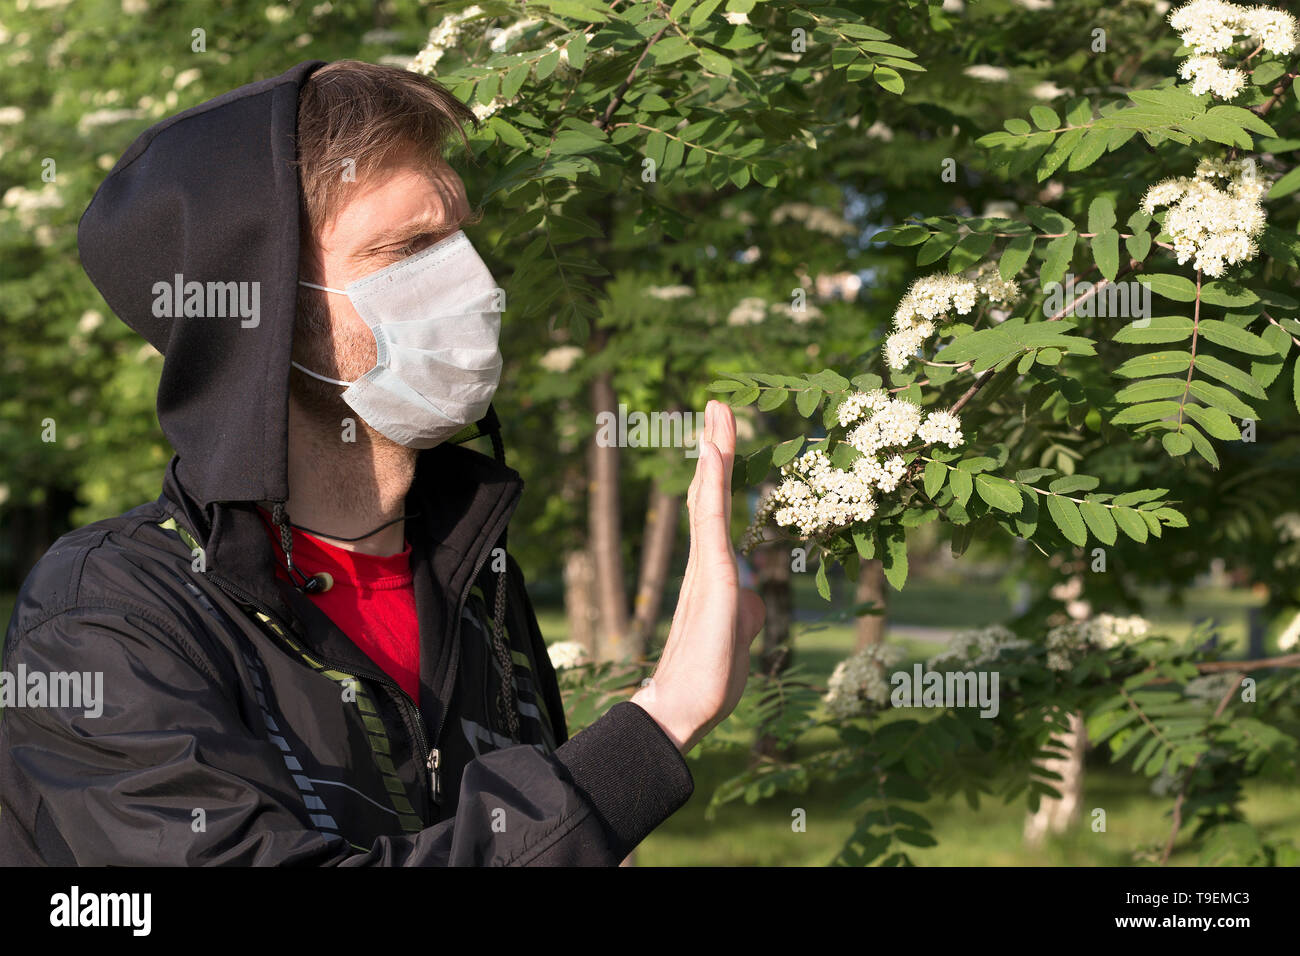 Dans un homme portant un masque médical capot noir montre à un geste d'arrêt fleurs de l'arbre. Concept de soins de santé Banque D'Images